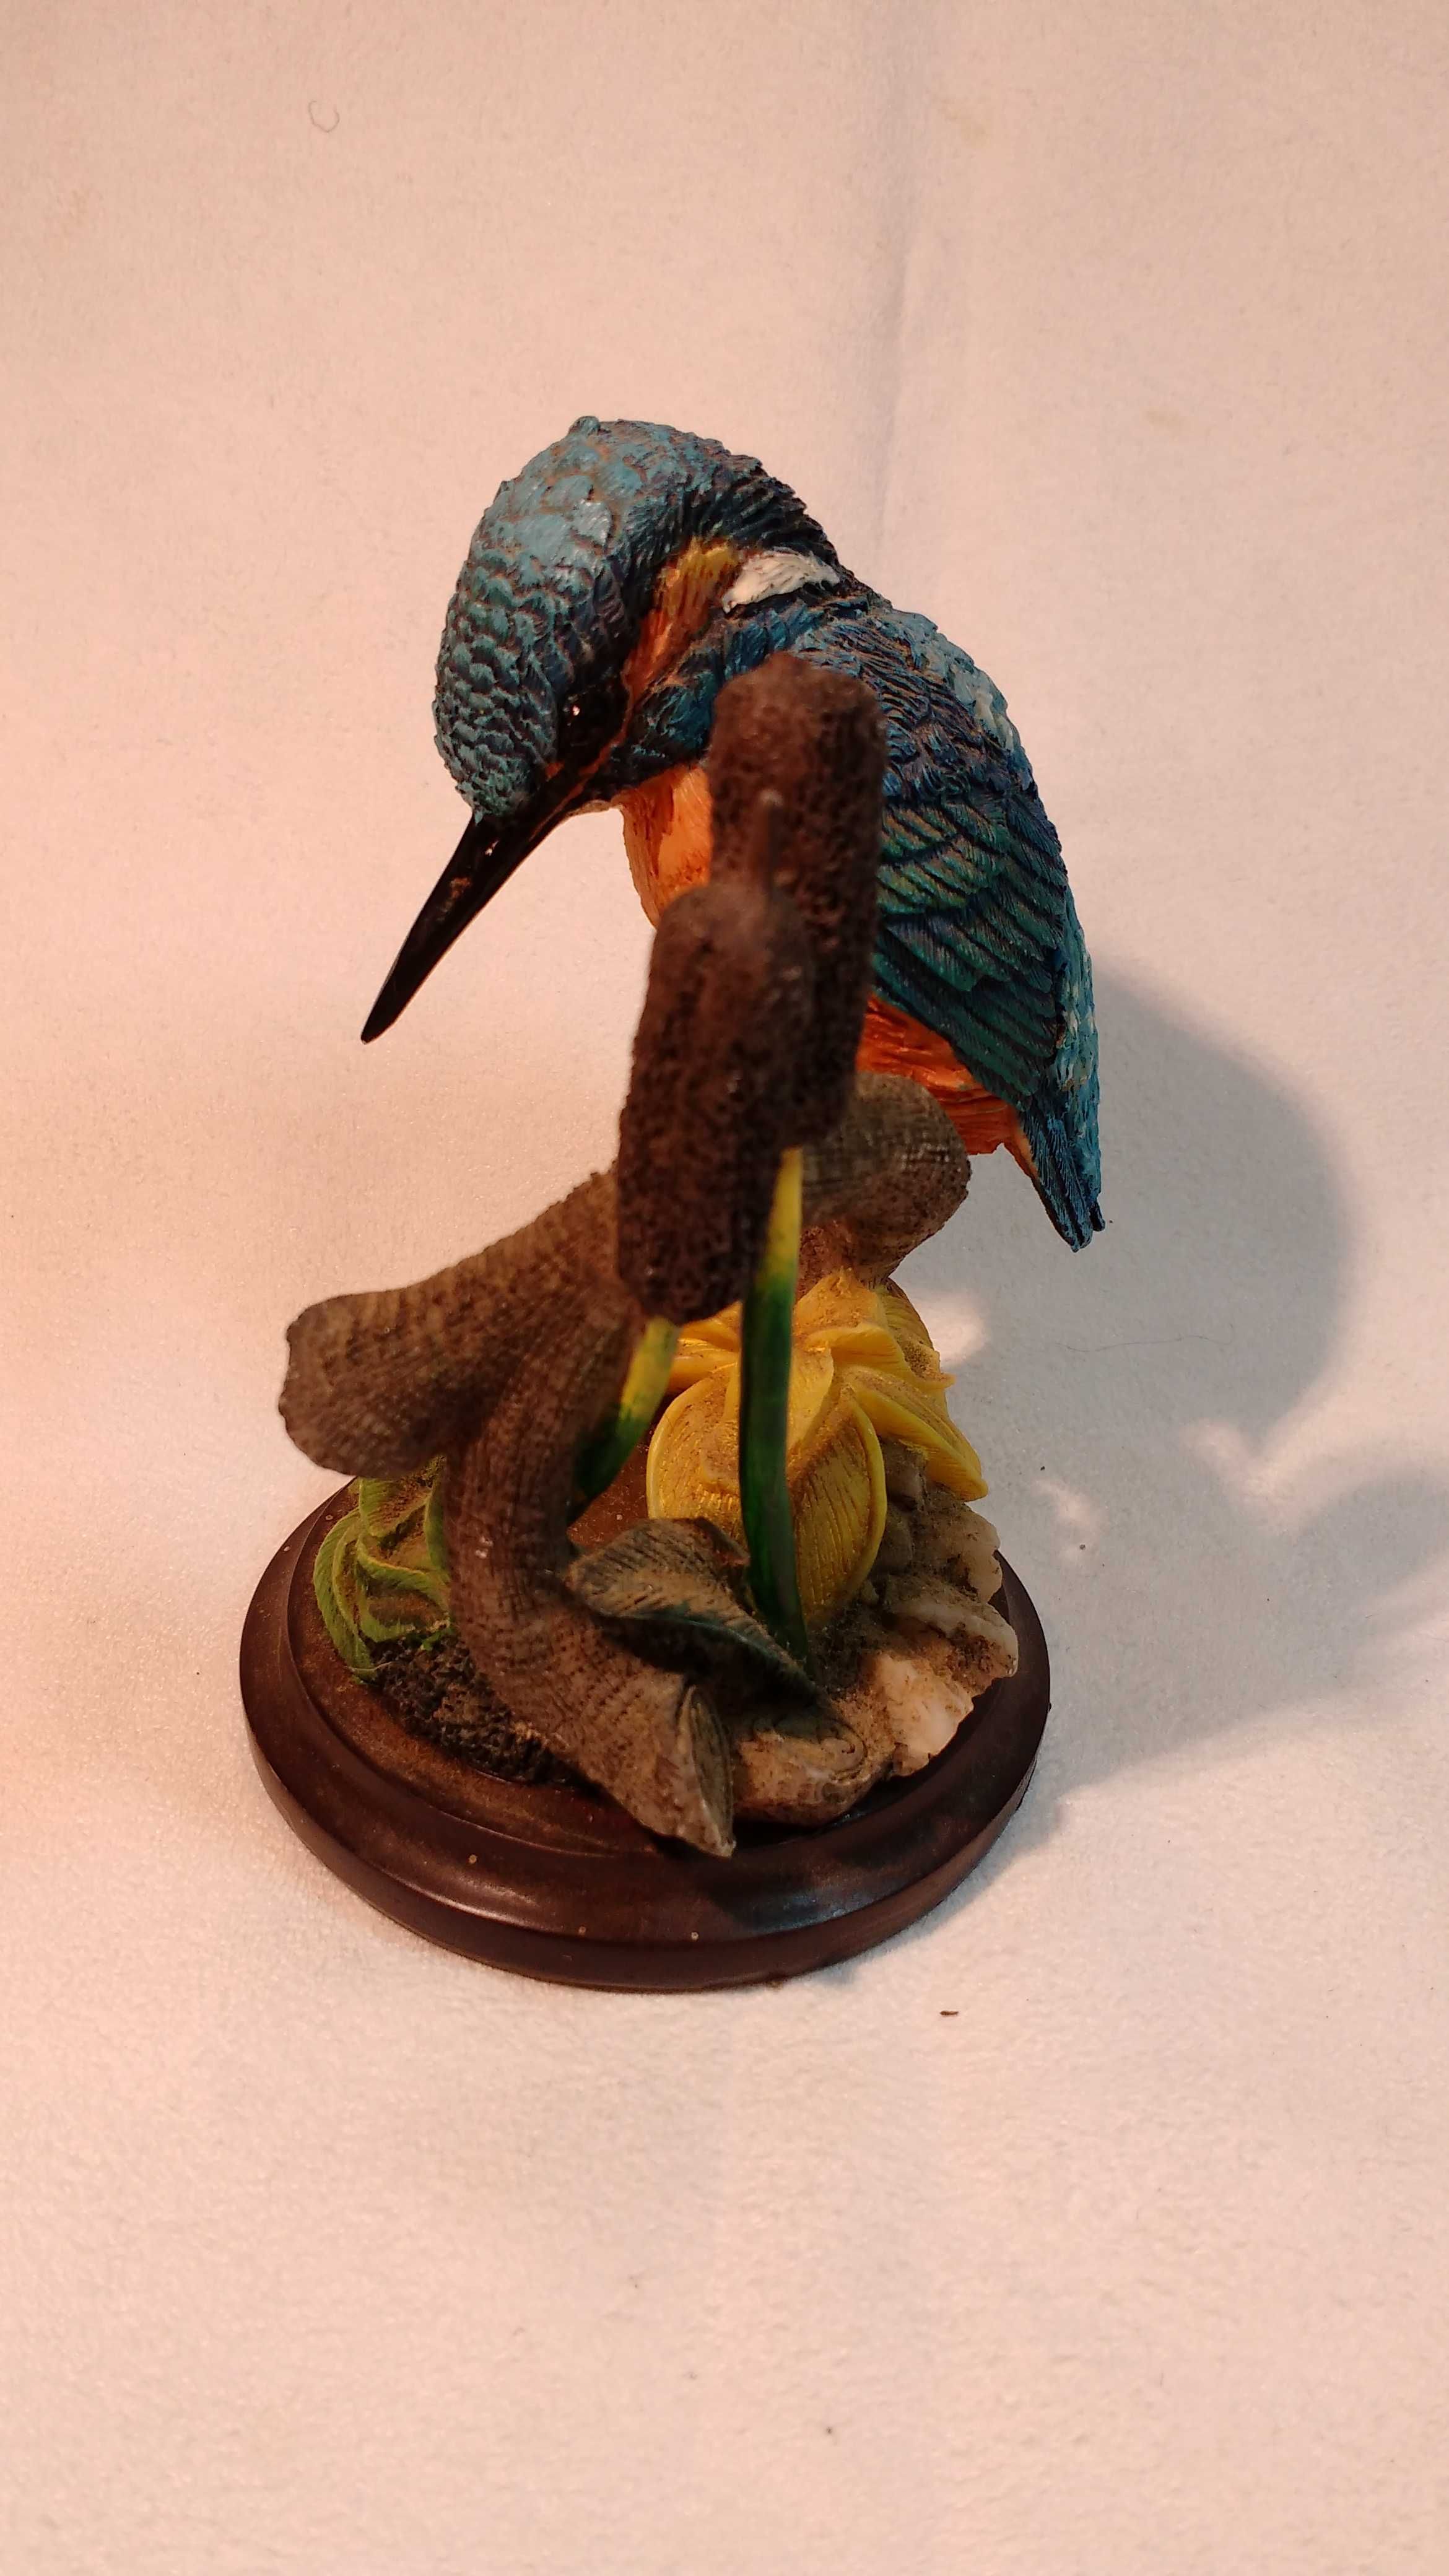 Piękny kolekcjonerski ptak
Figurka